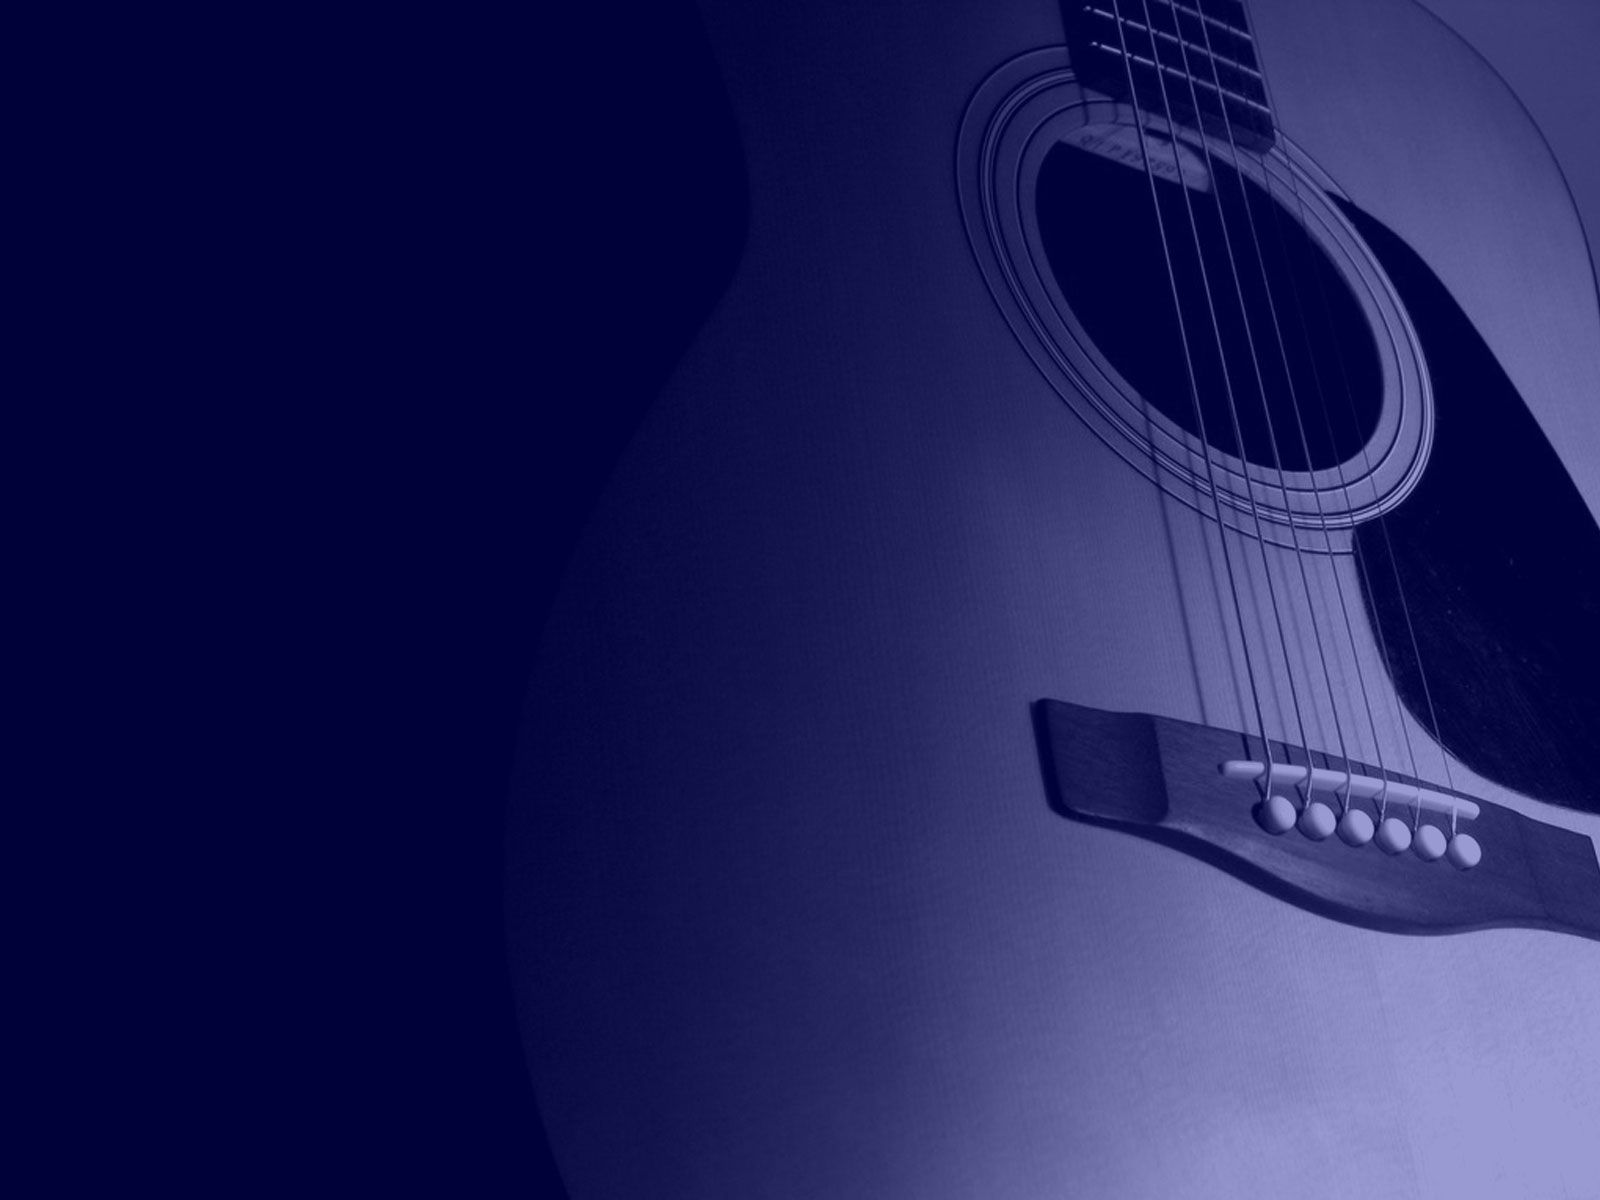 Guitar Blue Christian Wallpaper Free Download - More Like Her Lyric Quotes Miranda Lambert - HD Wallpaper 